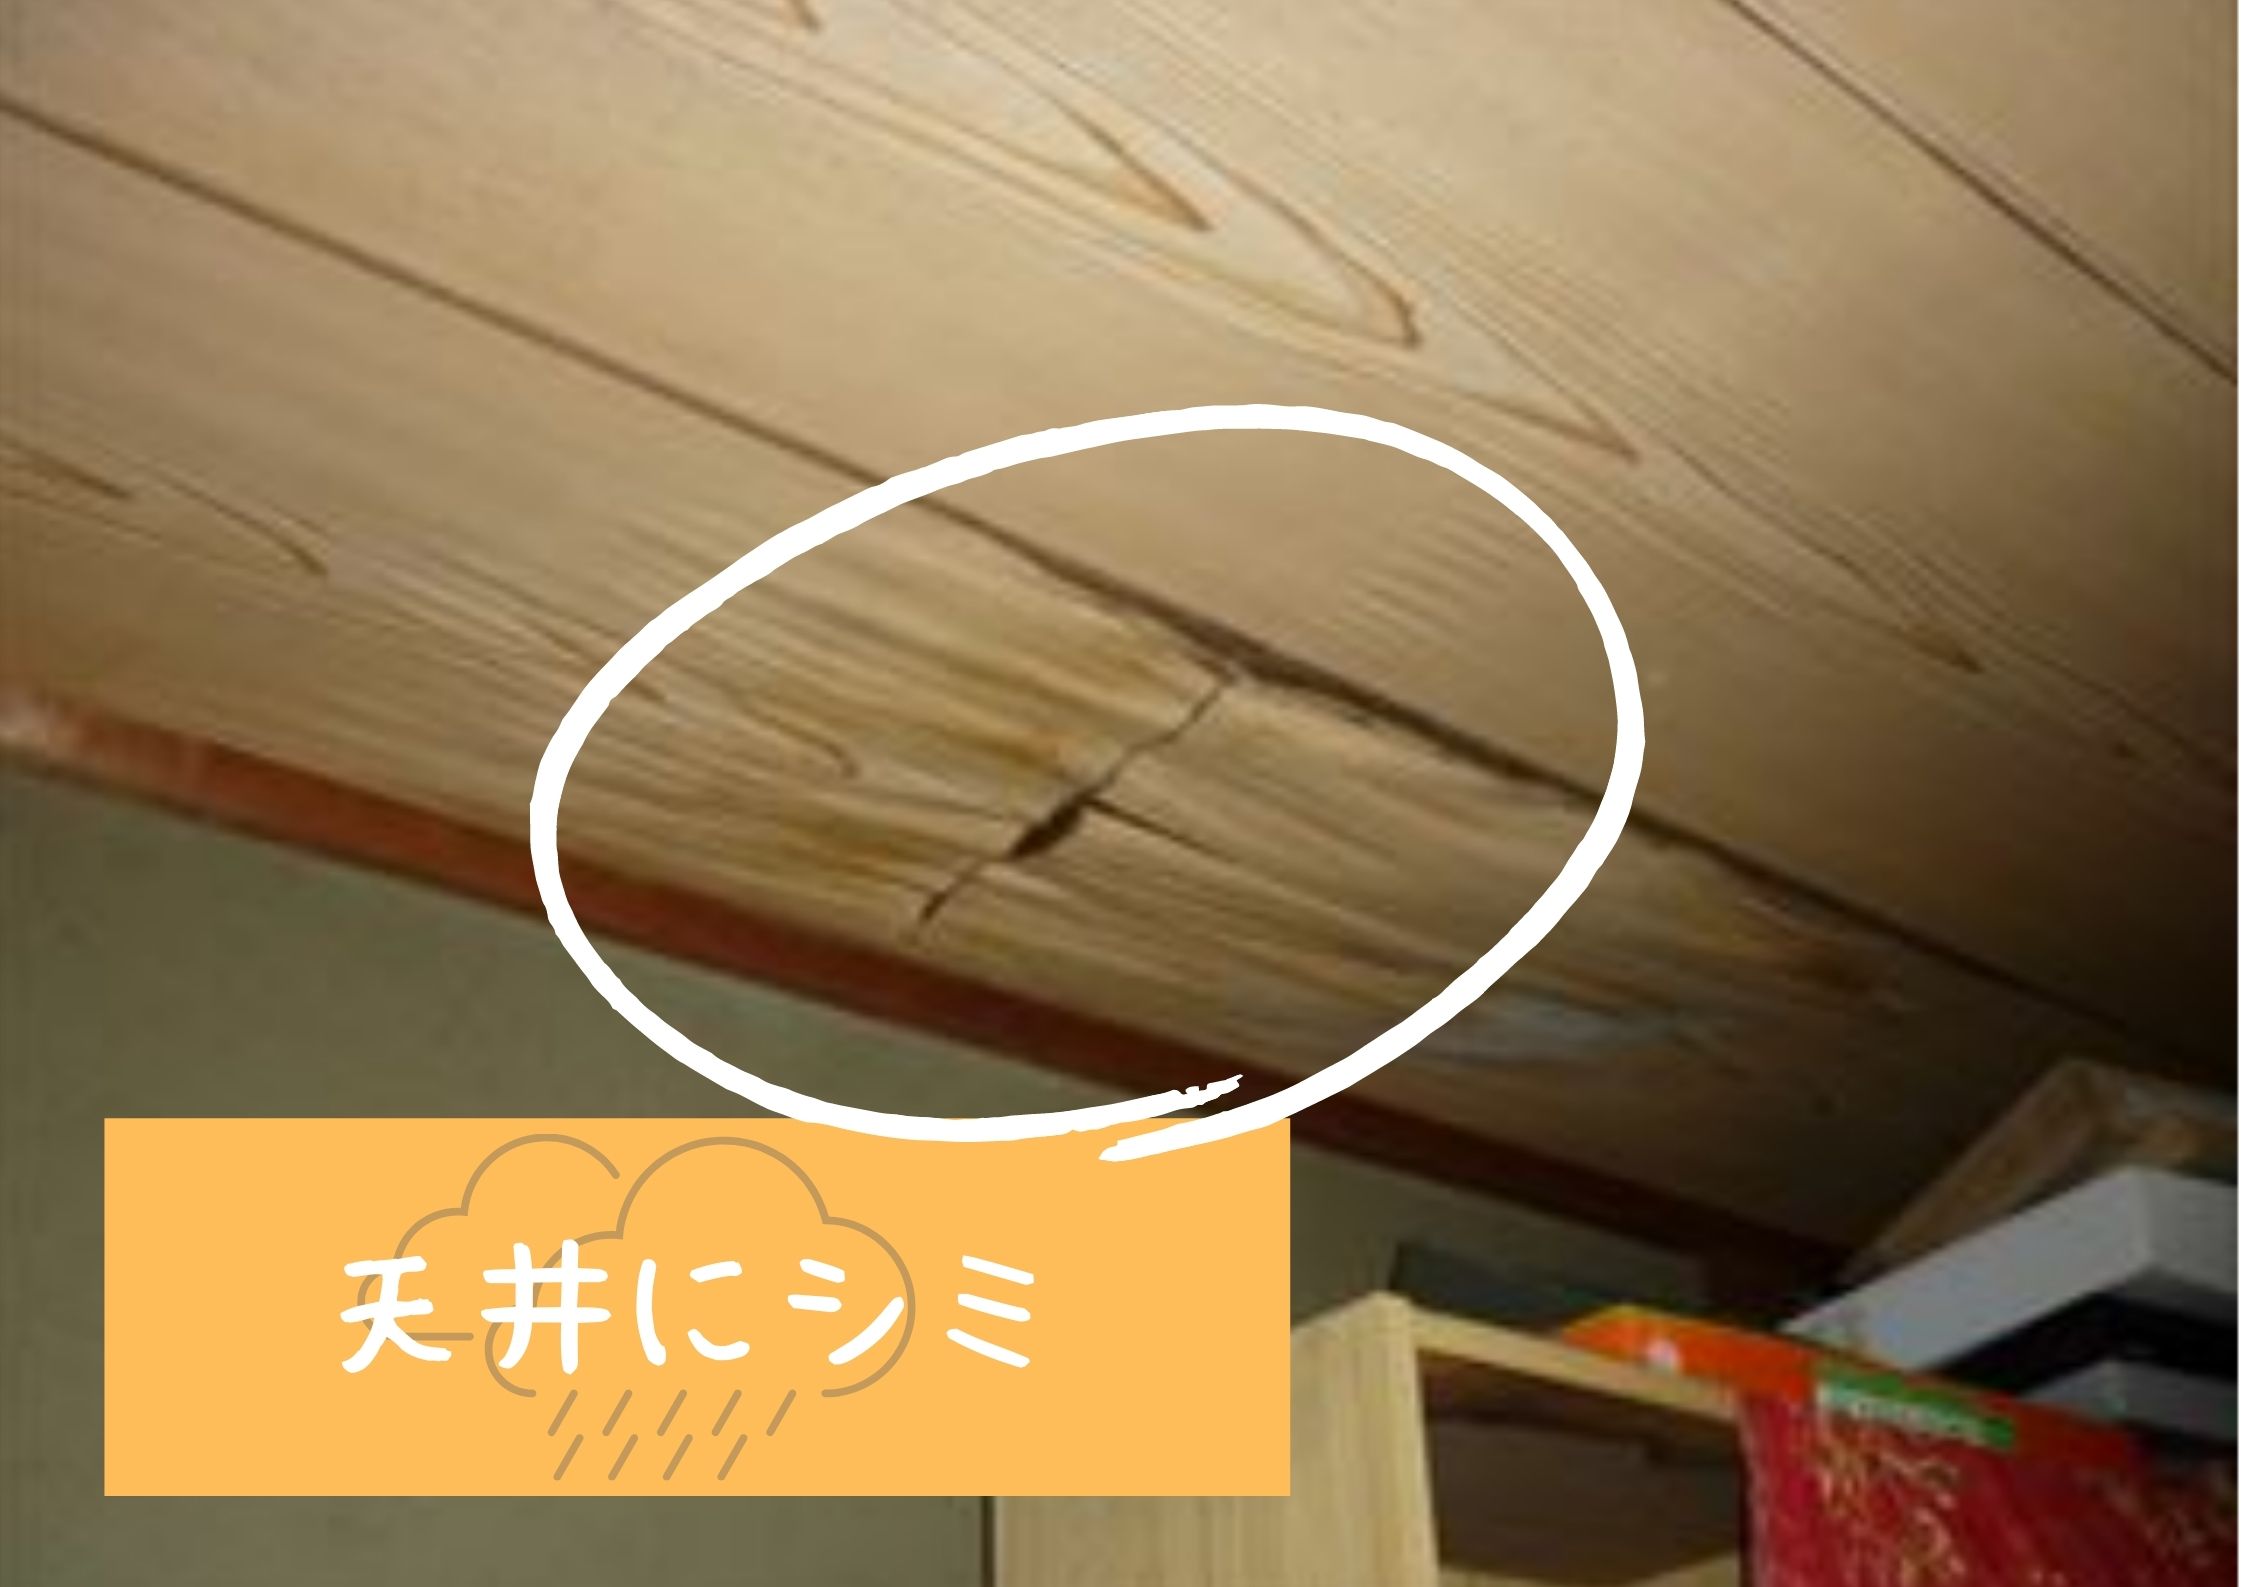 日進市にてベランダからの雨漏りのお宅の点検で天井にシミが 名古屋市 東海市 大府市で屋根修理 リフォームなら街の屋根やさん